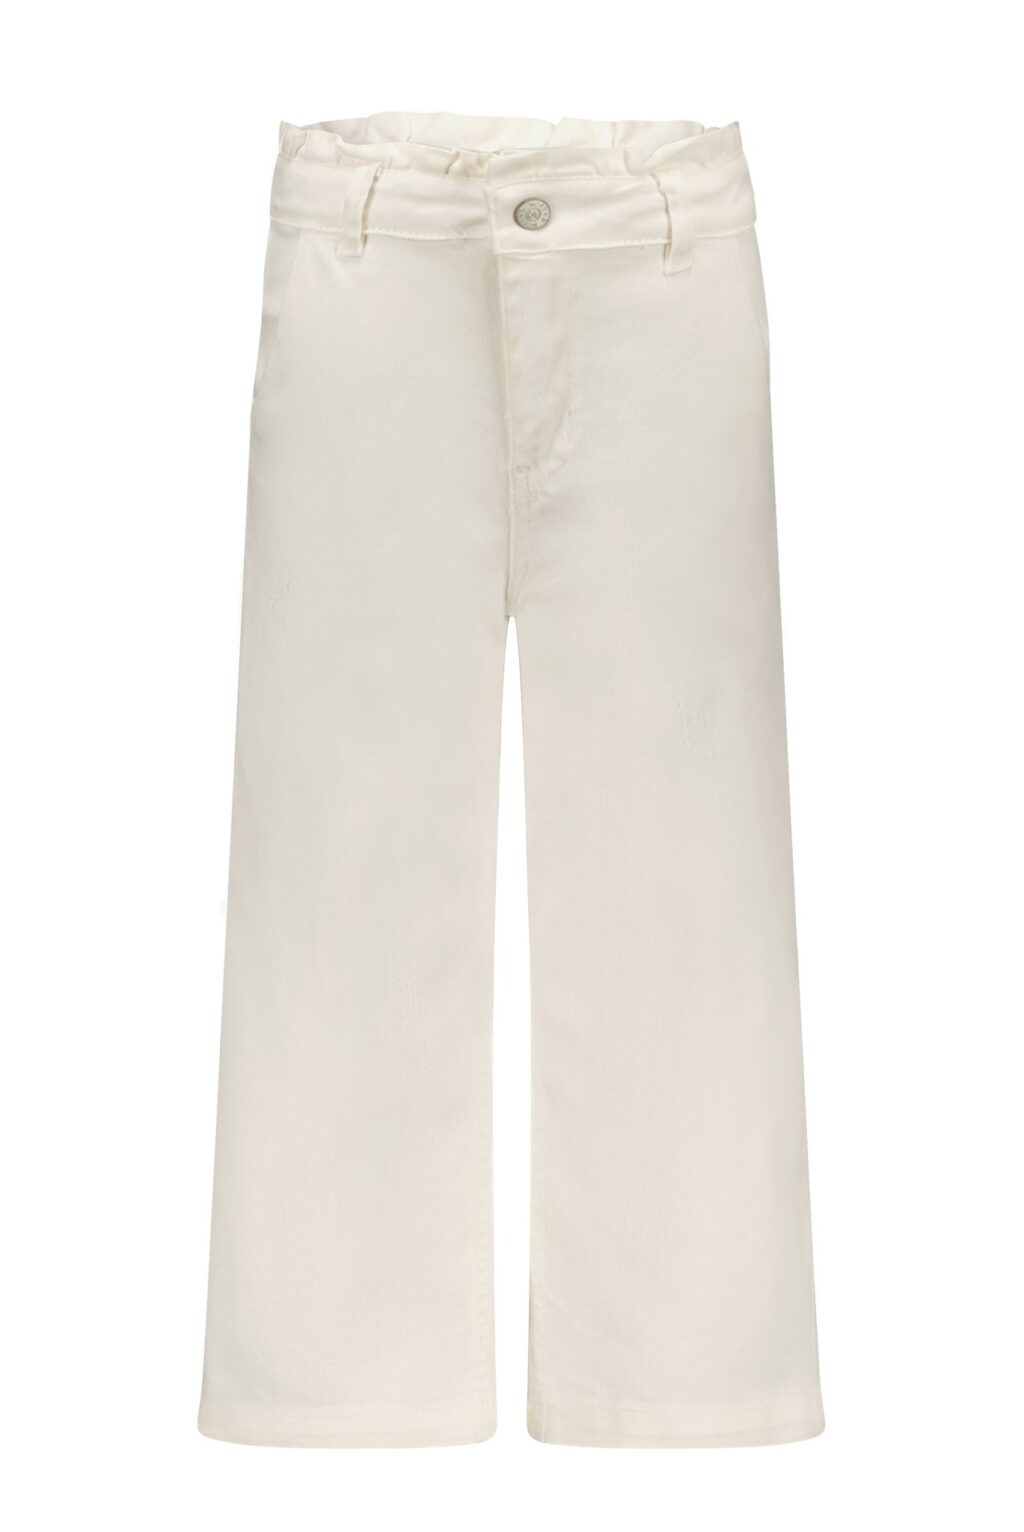 B.Nosy Meisjes jeans broek wide leg - Cotton ~ Spinze.nl